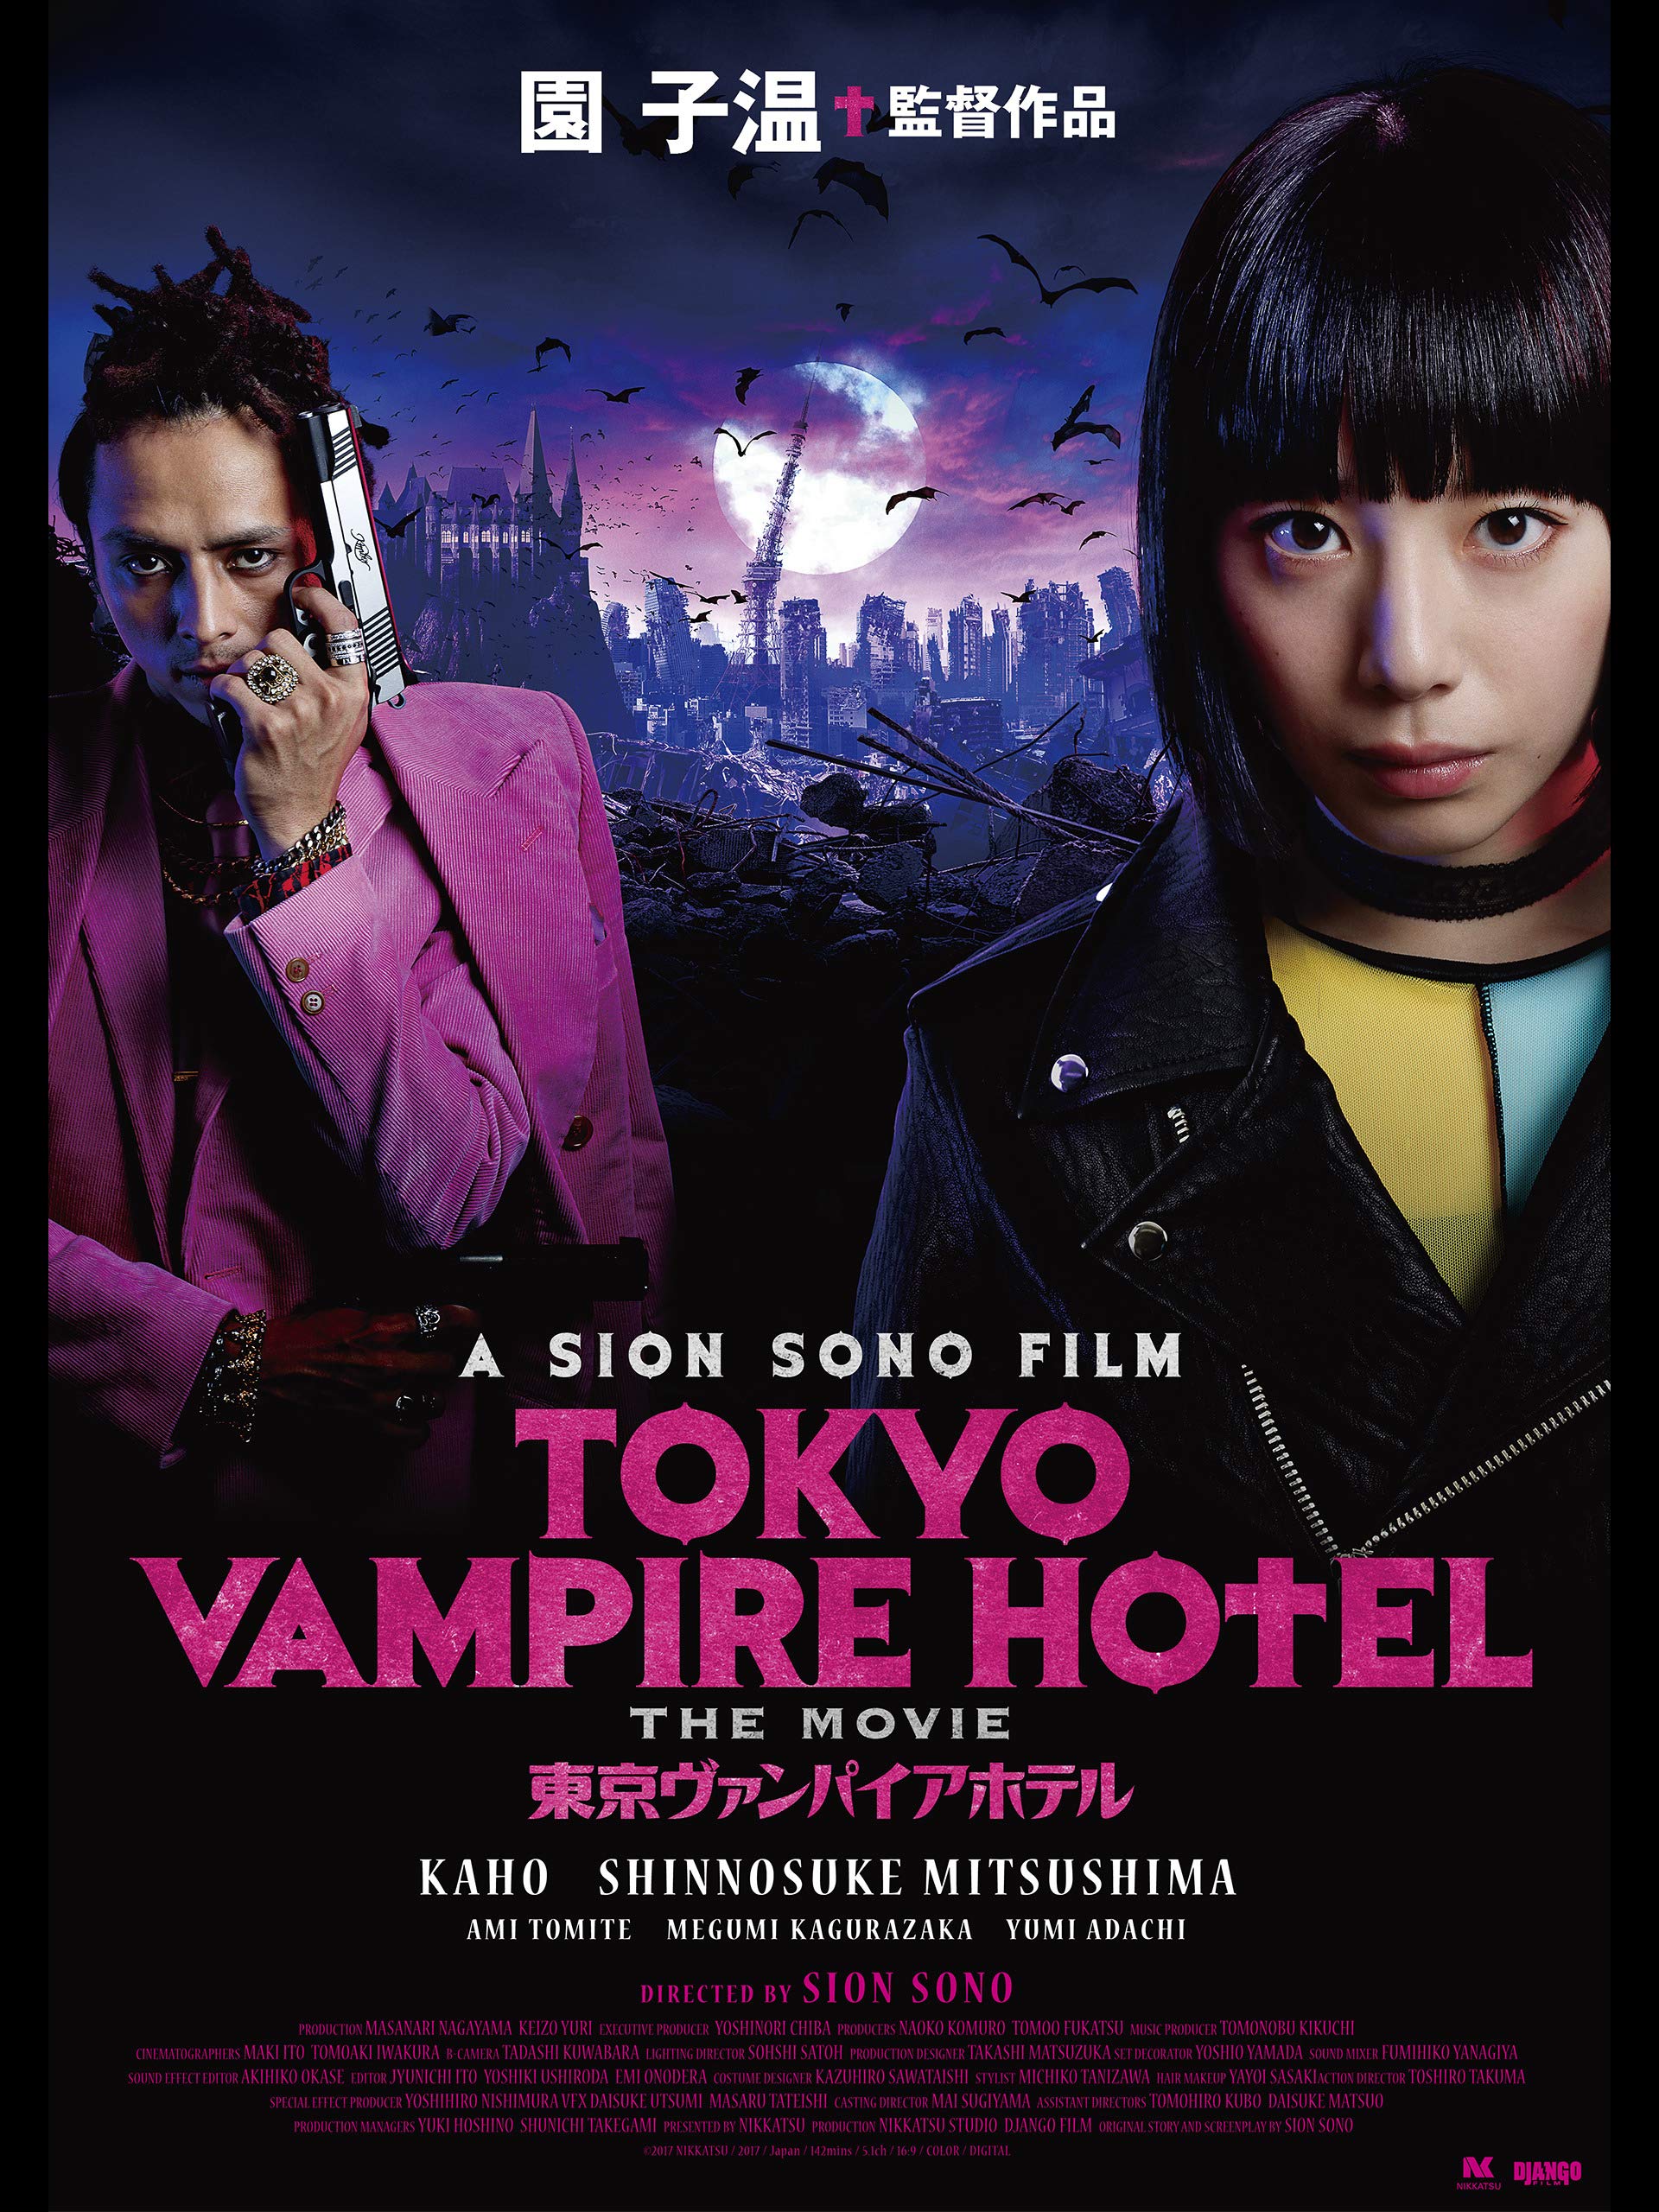 ดูหนังออนไลน์ฟรี TOKYO VAMPIRE HOTEL (2017) หนังเต็มเรื่อง หนังมาสเตอร์ ดูหนังHD ดูหนังออนไลน์ ดูหนังใหม่